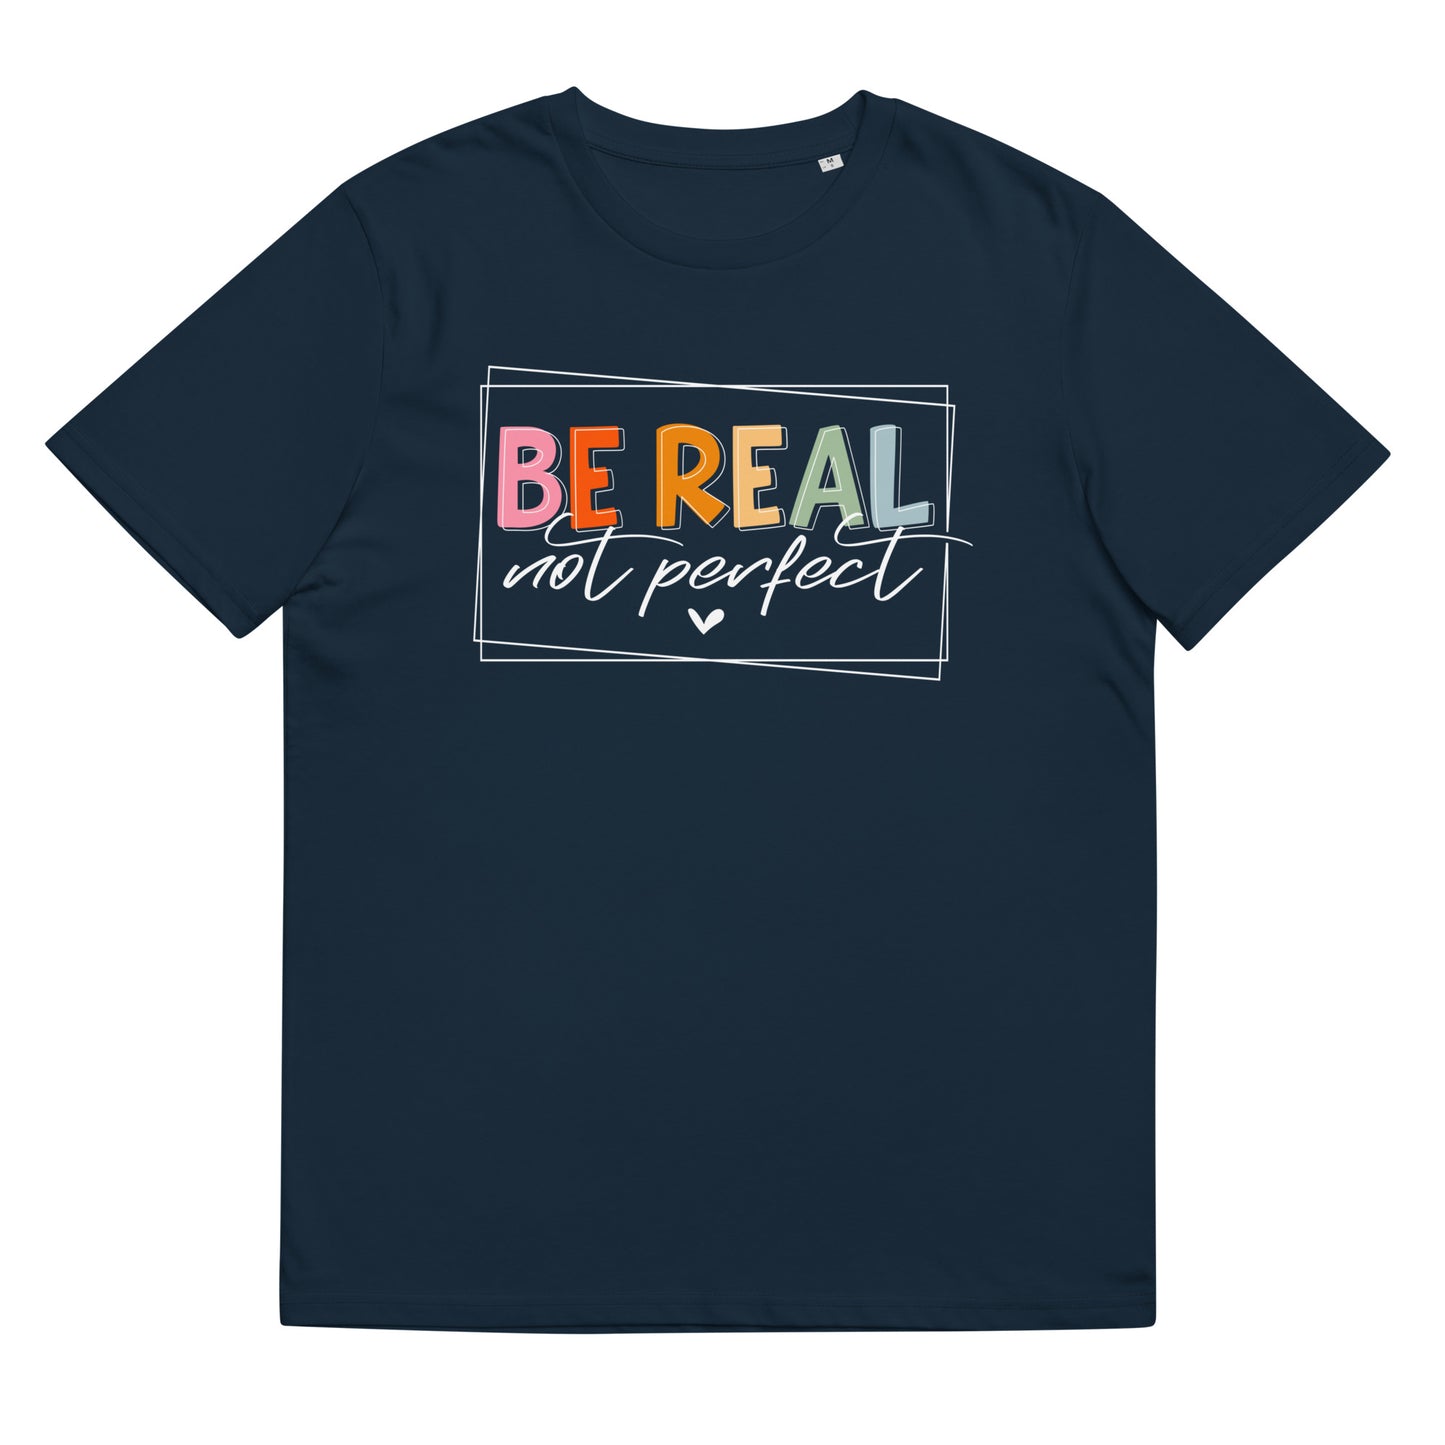 Organinės medvilnės unisex marškinėliai: "Be real, not perfect", tamsios spalvos